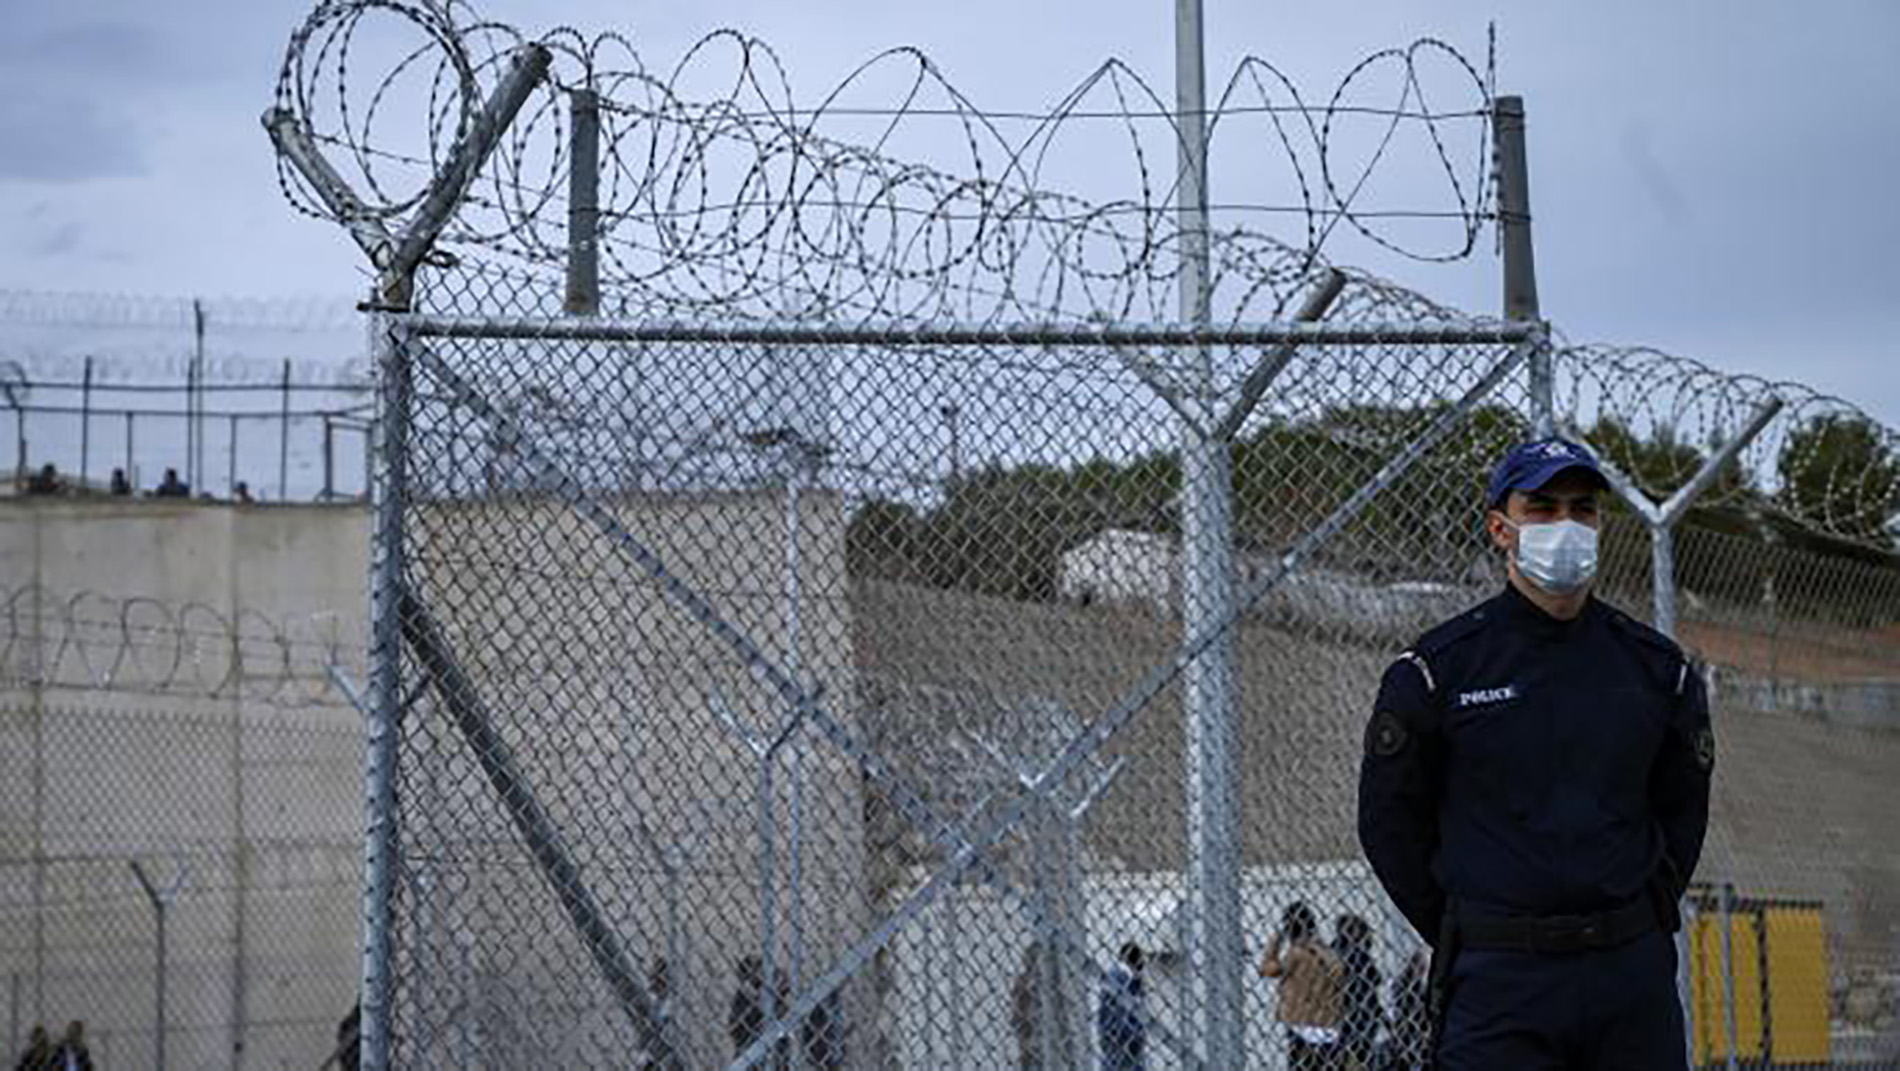 المفوضية الأوروبية تدعو اليونان إلى وقف عمليات إعادة المهاجرين